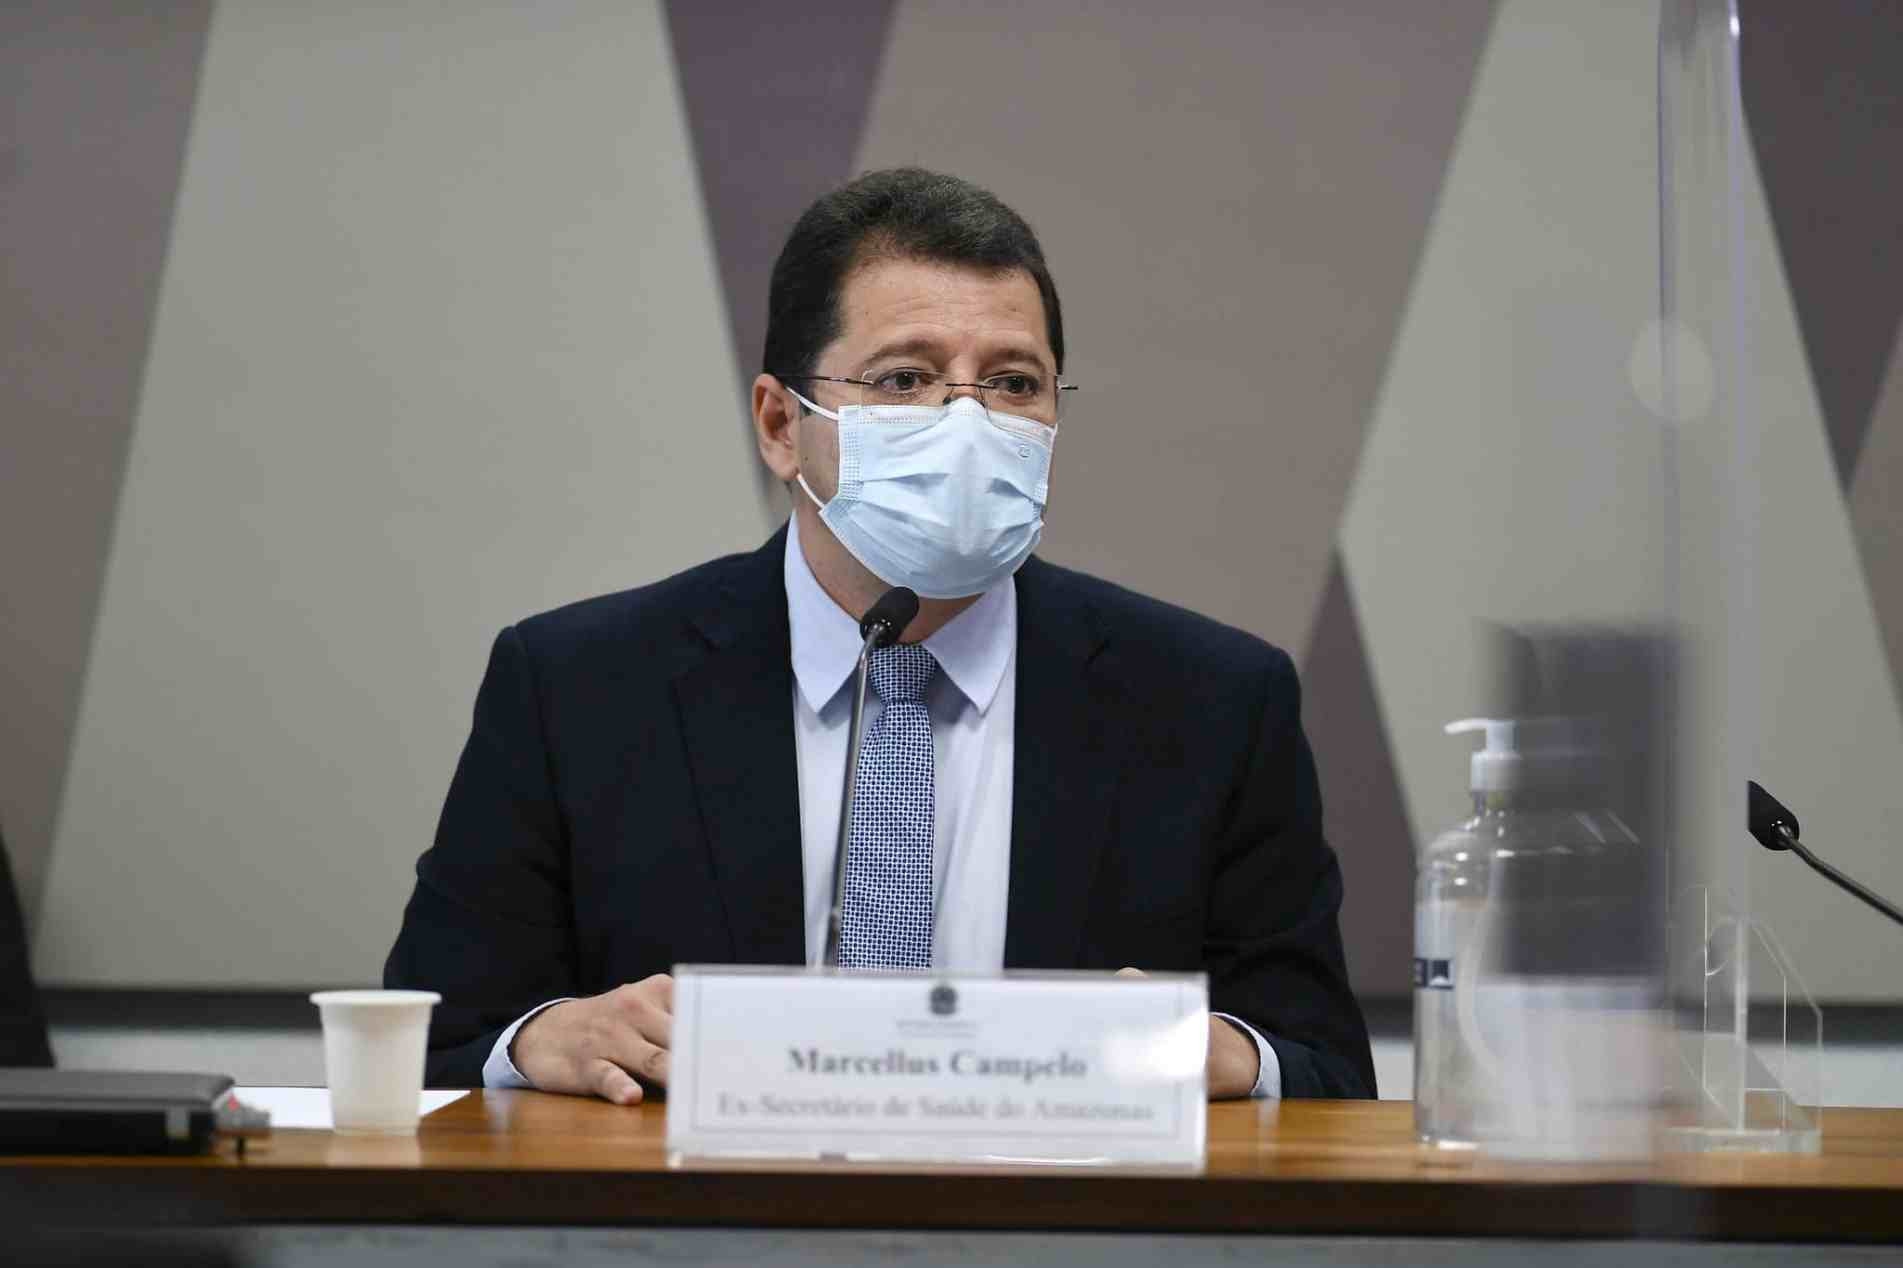 Marcellus Campêlo, ex-secretário de Saúde do Amazonas.